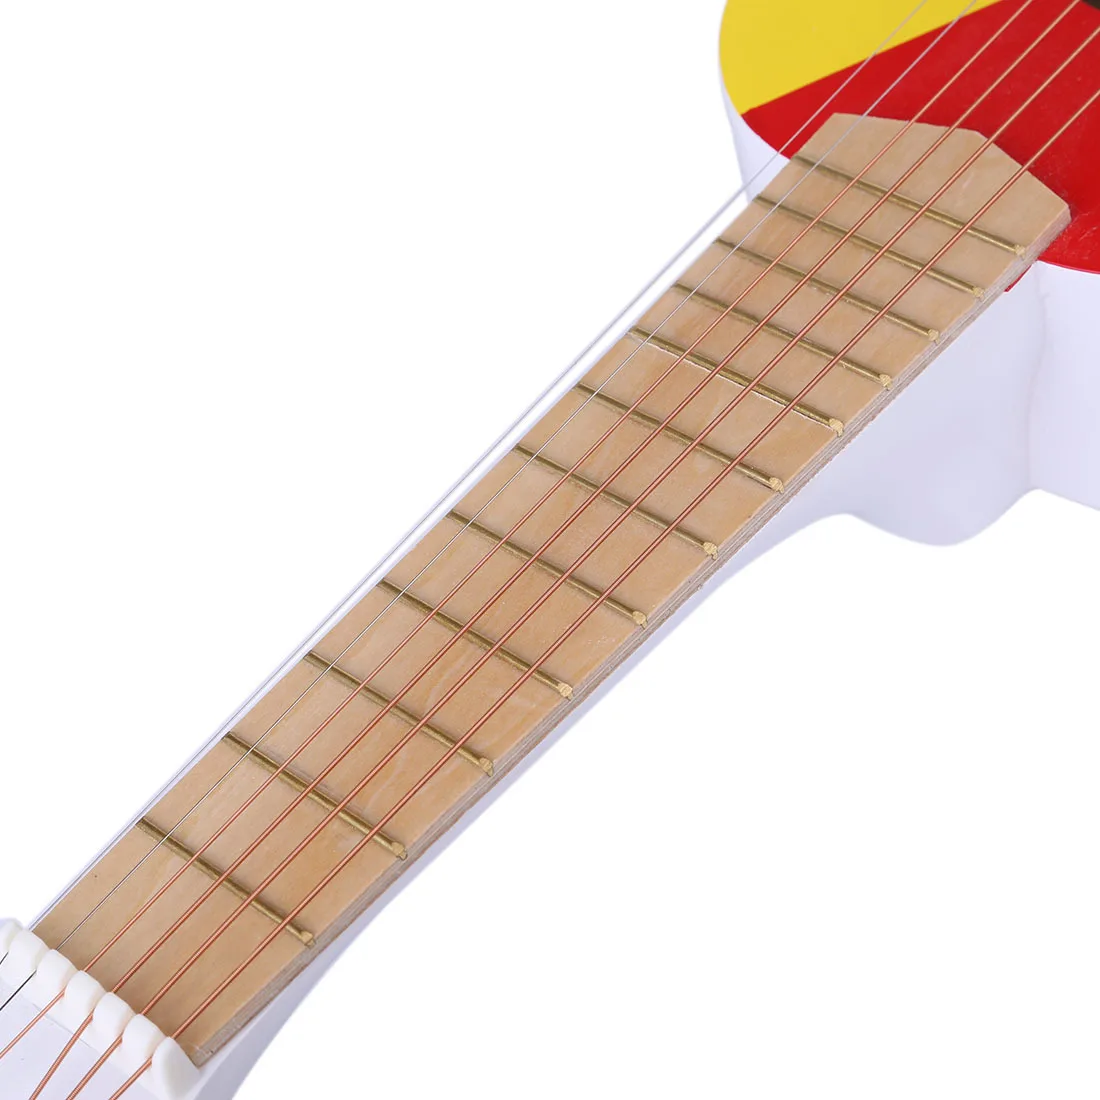 23 дюйма 6 струн музыкальный инструмент гитара подарок для детей-желтая Зебра/разные цвета